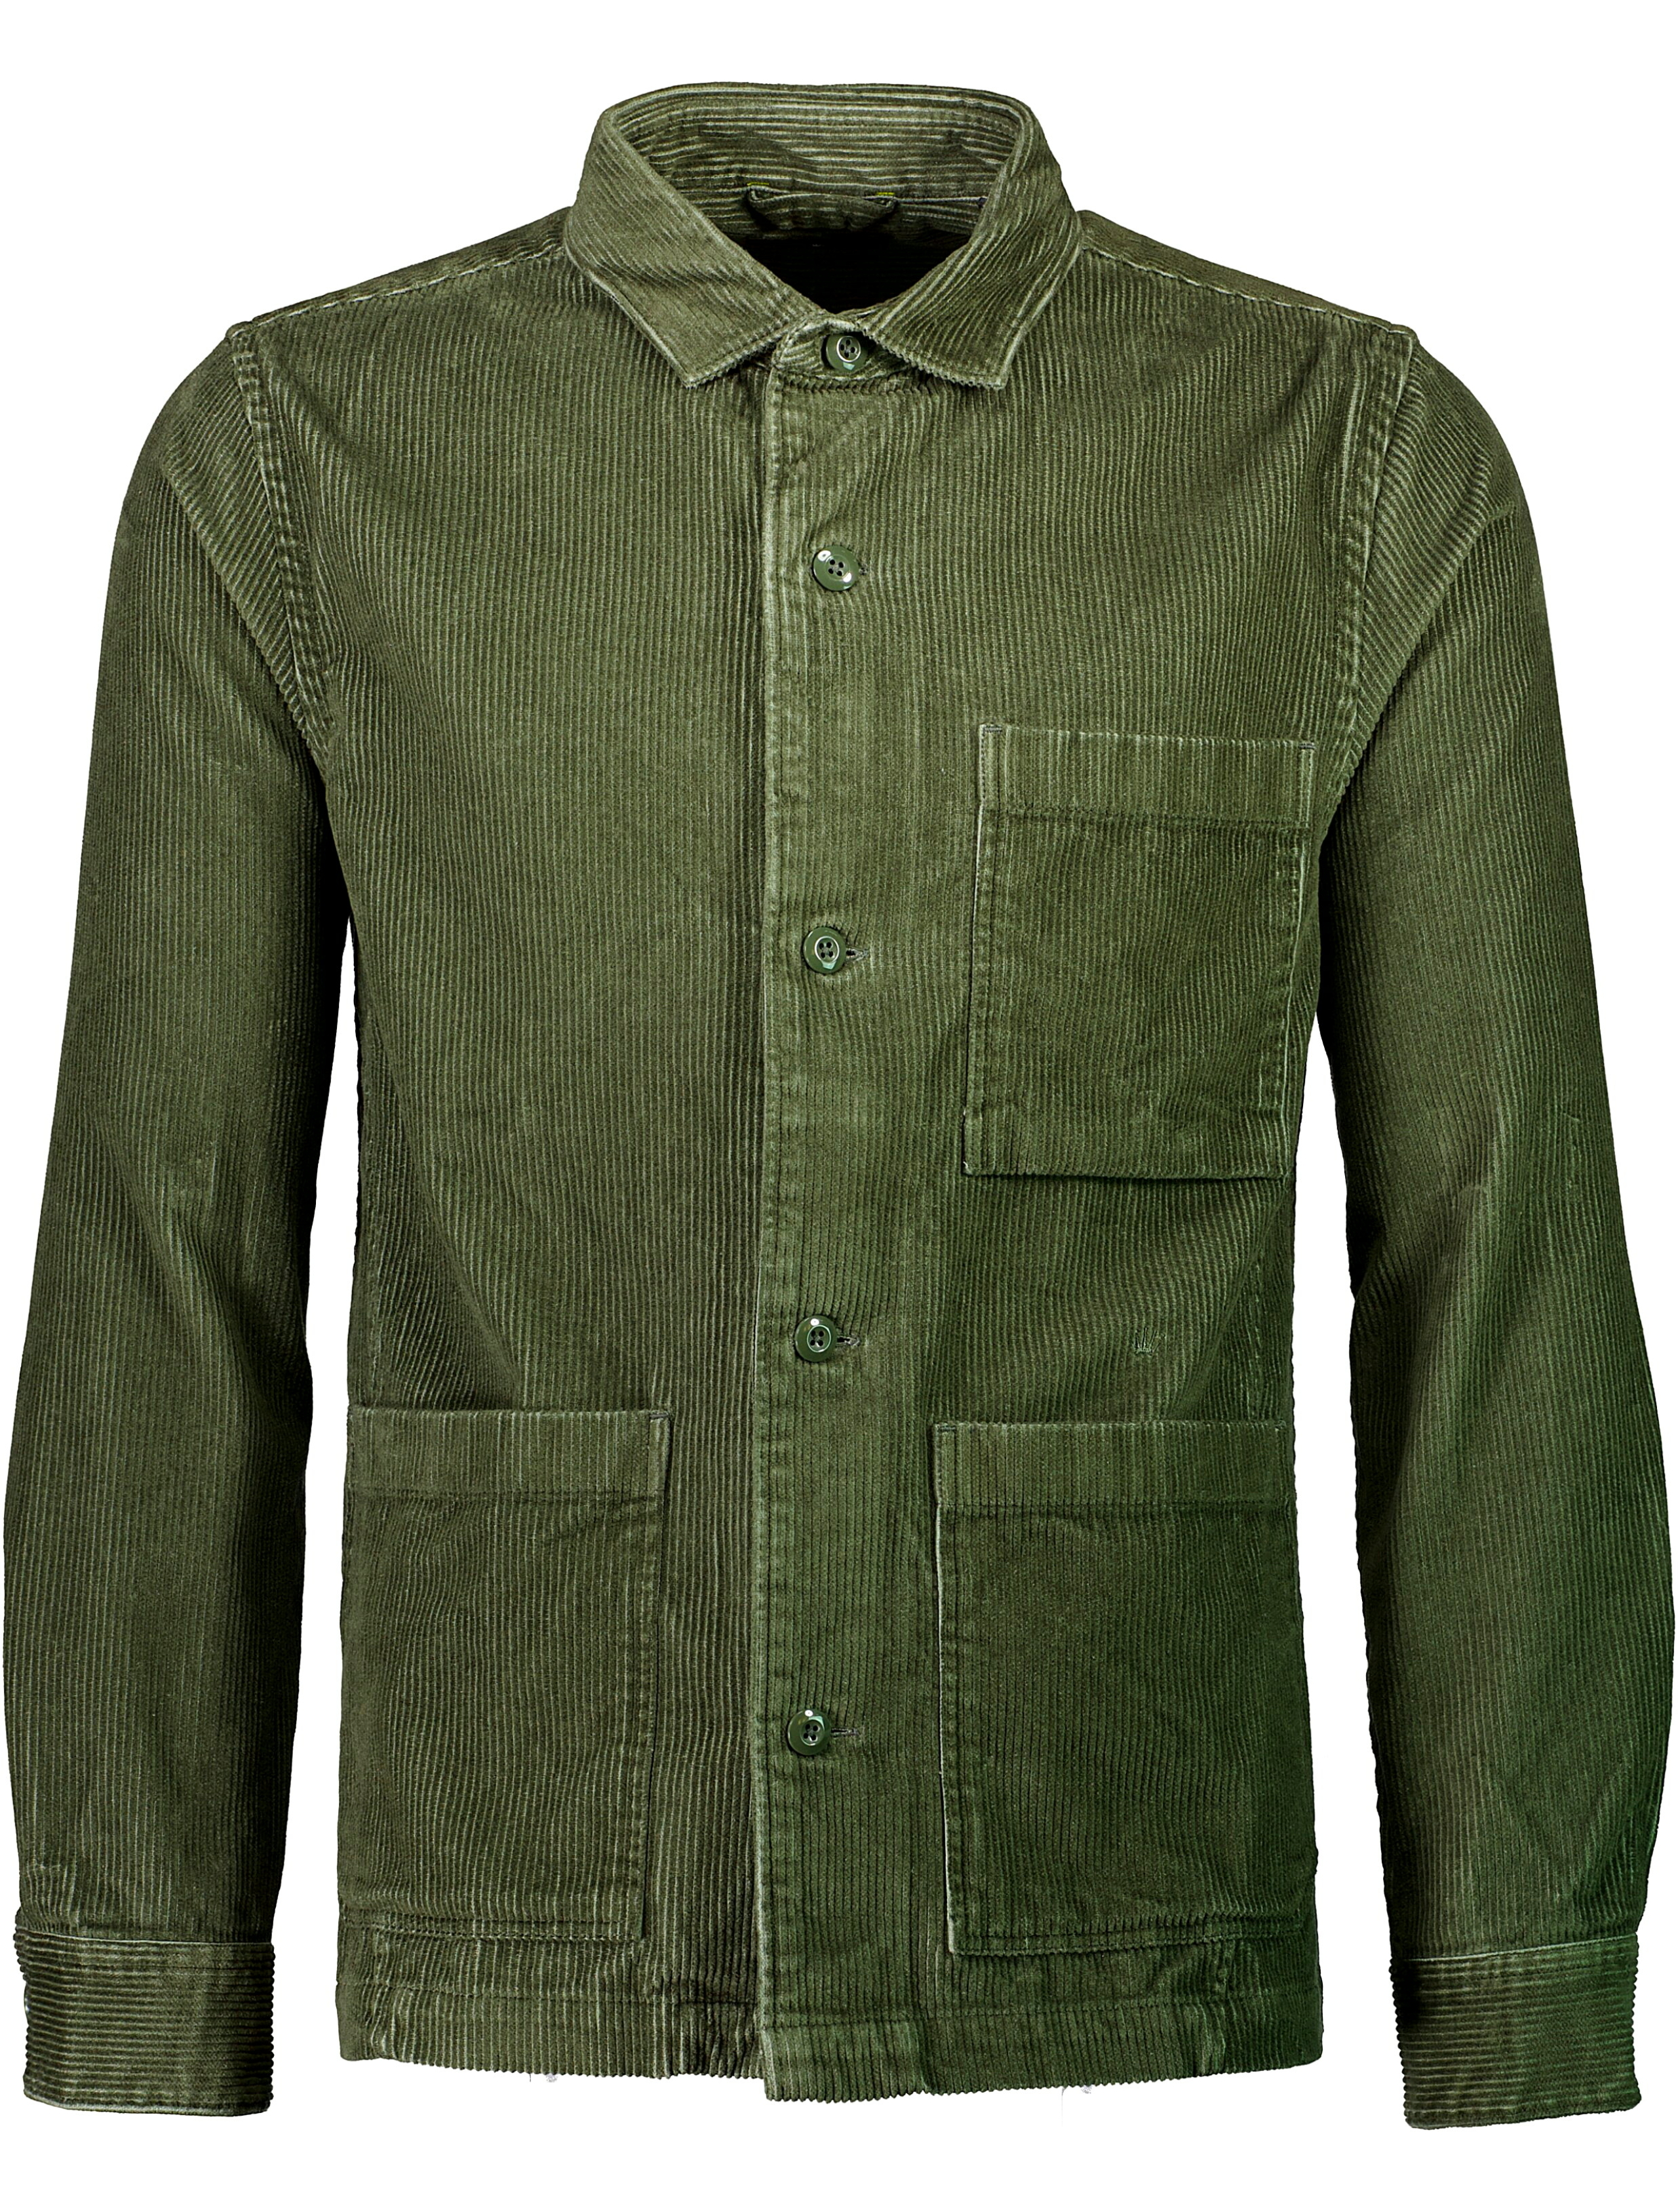 Junk de Luxe Overshirt grøn / army